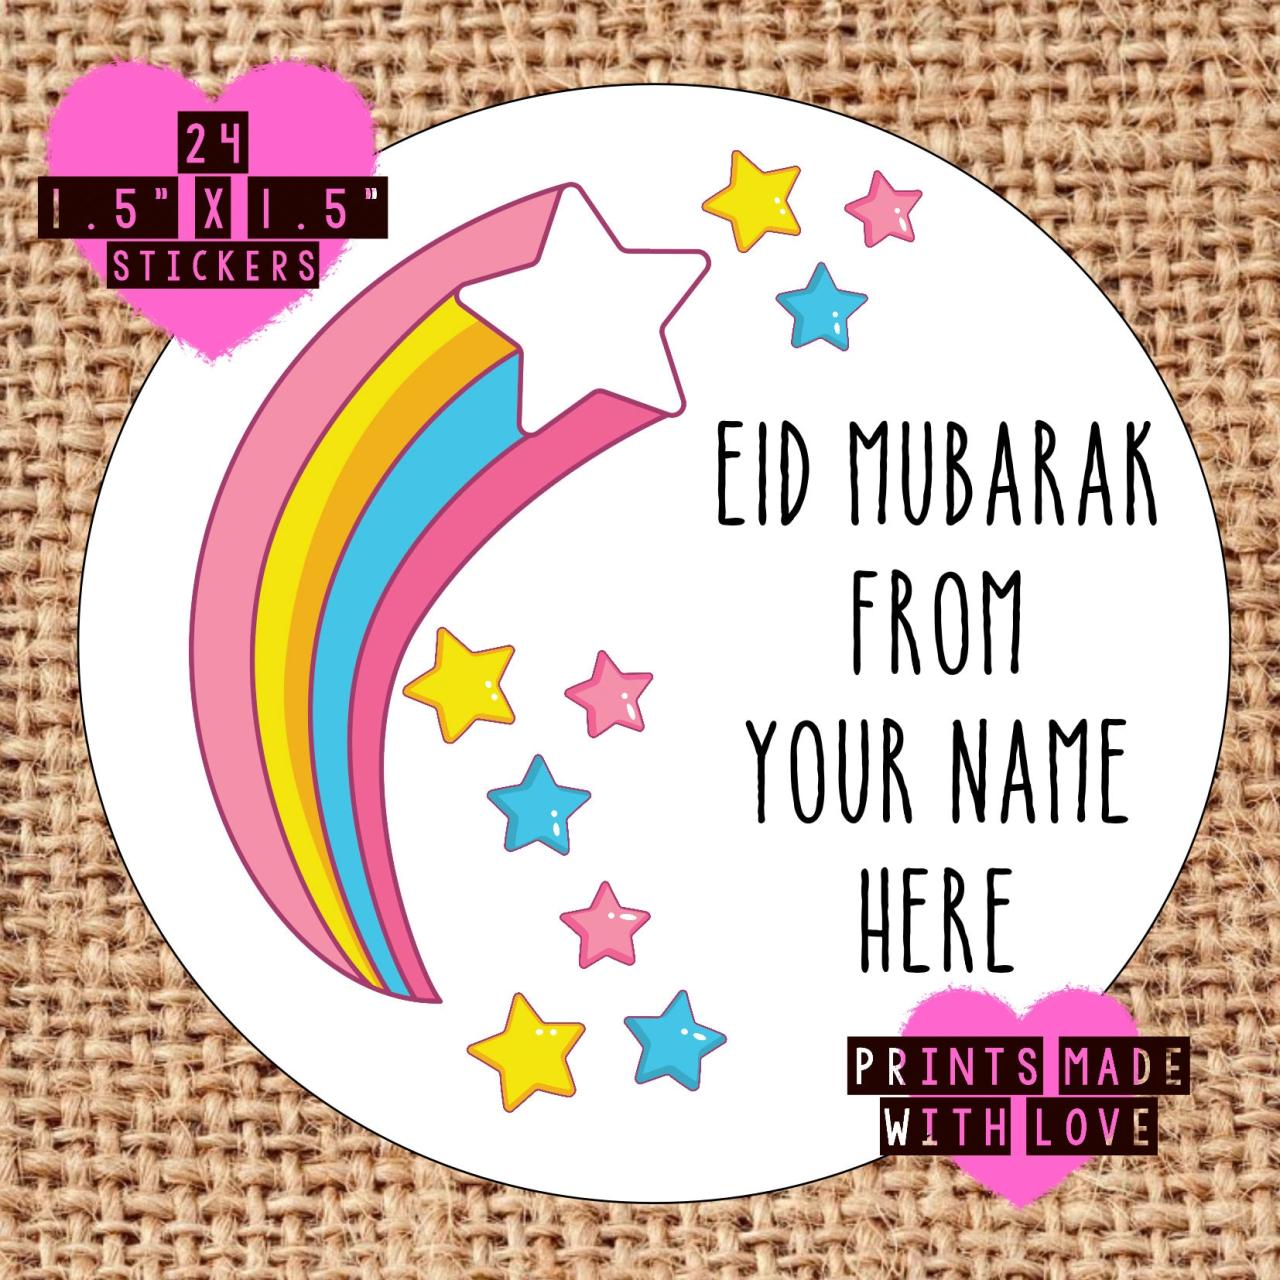 Mubarak stickers adha ramadan greetings fitr mubark